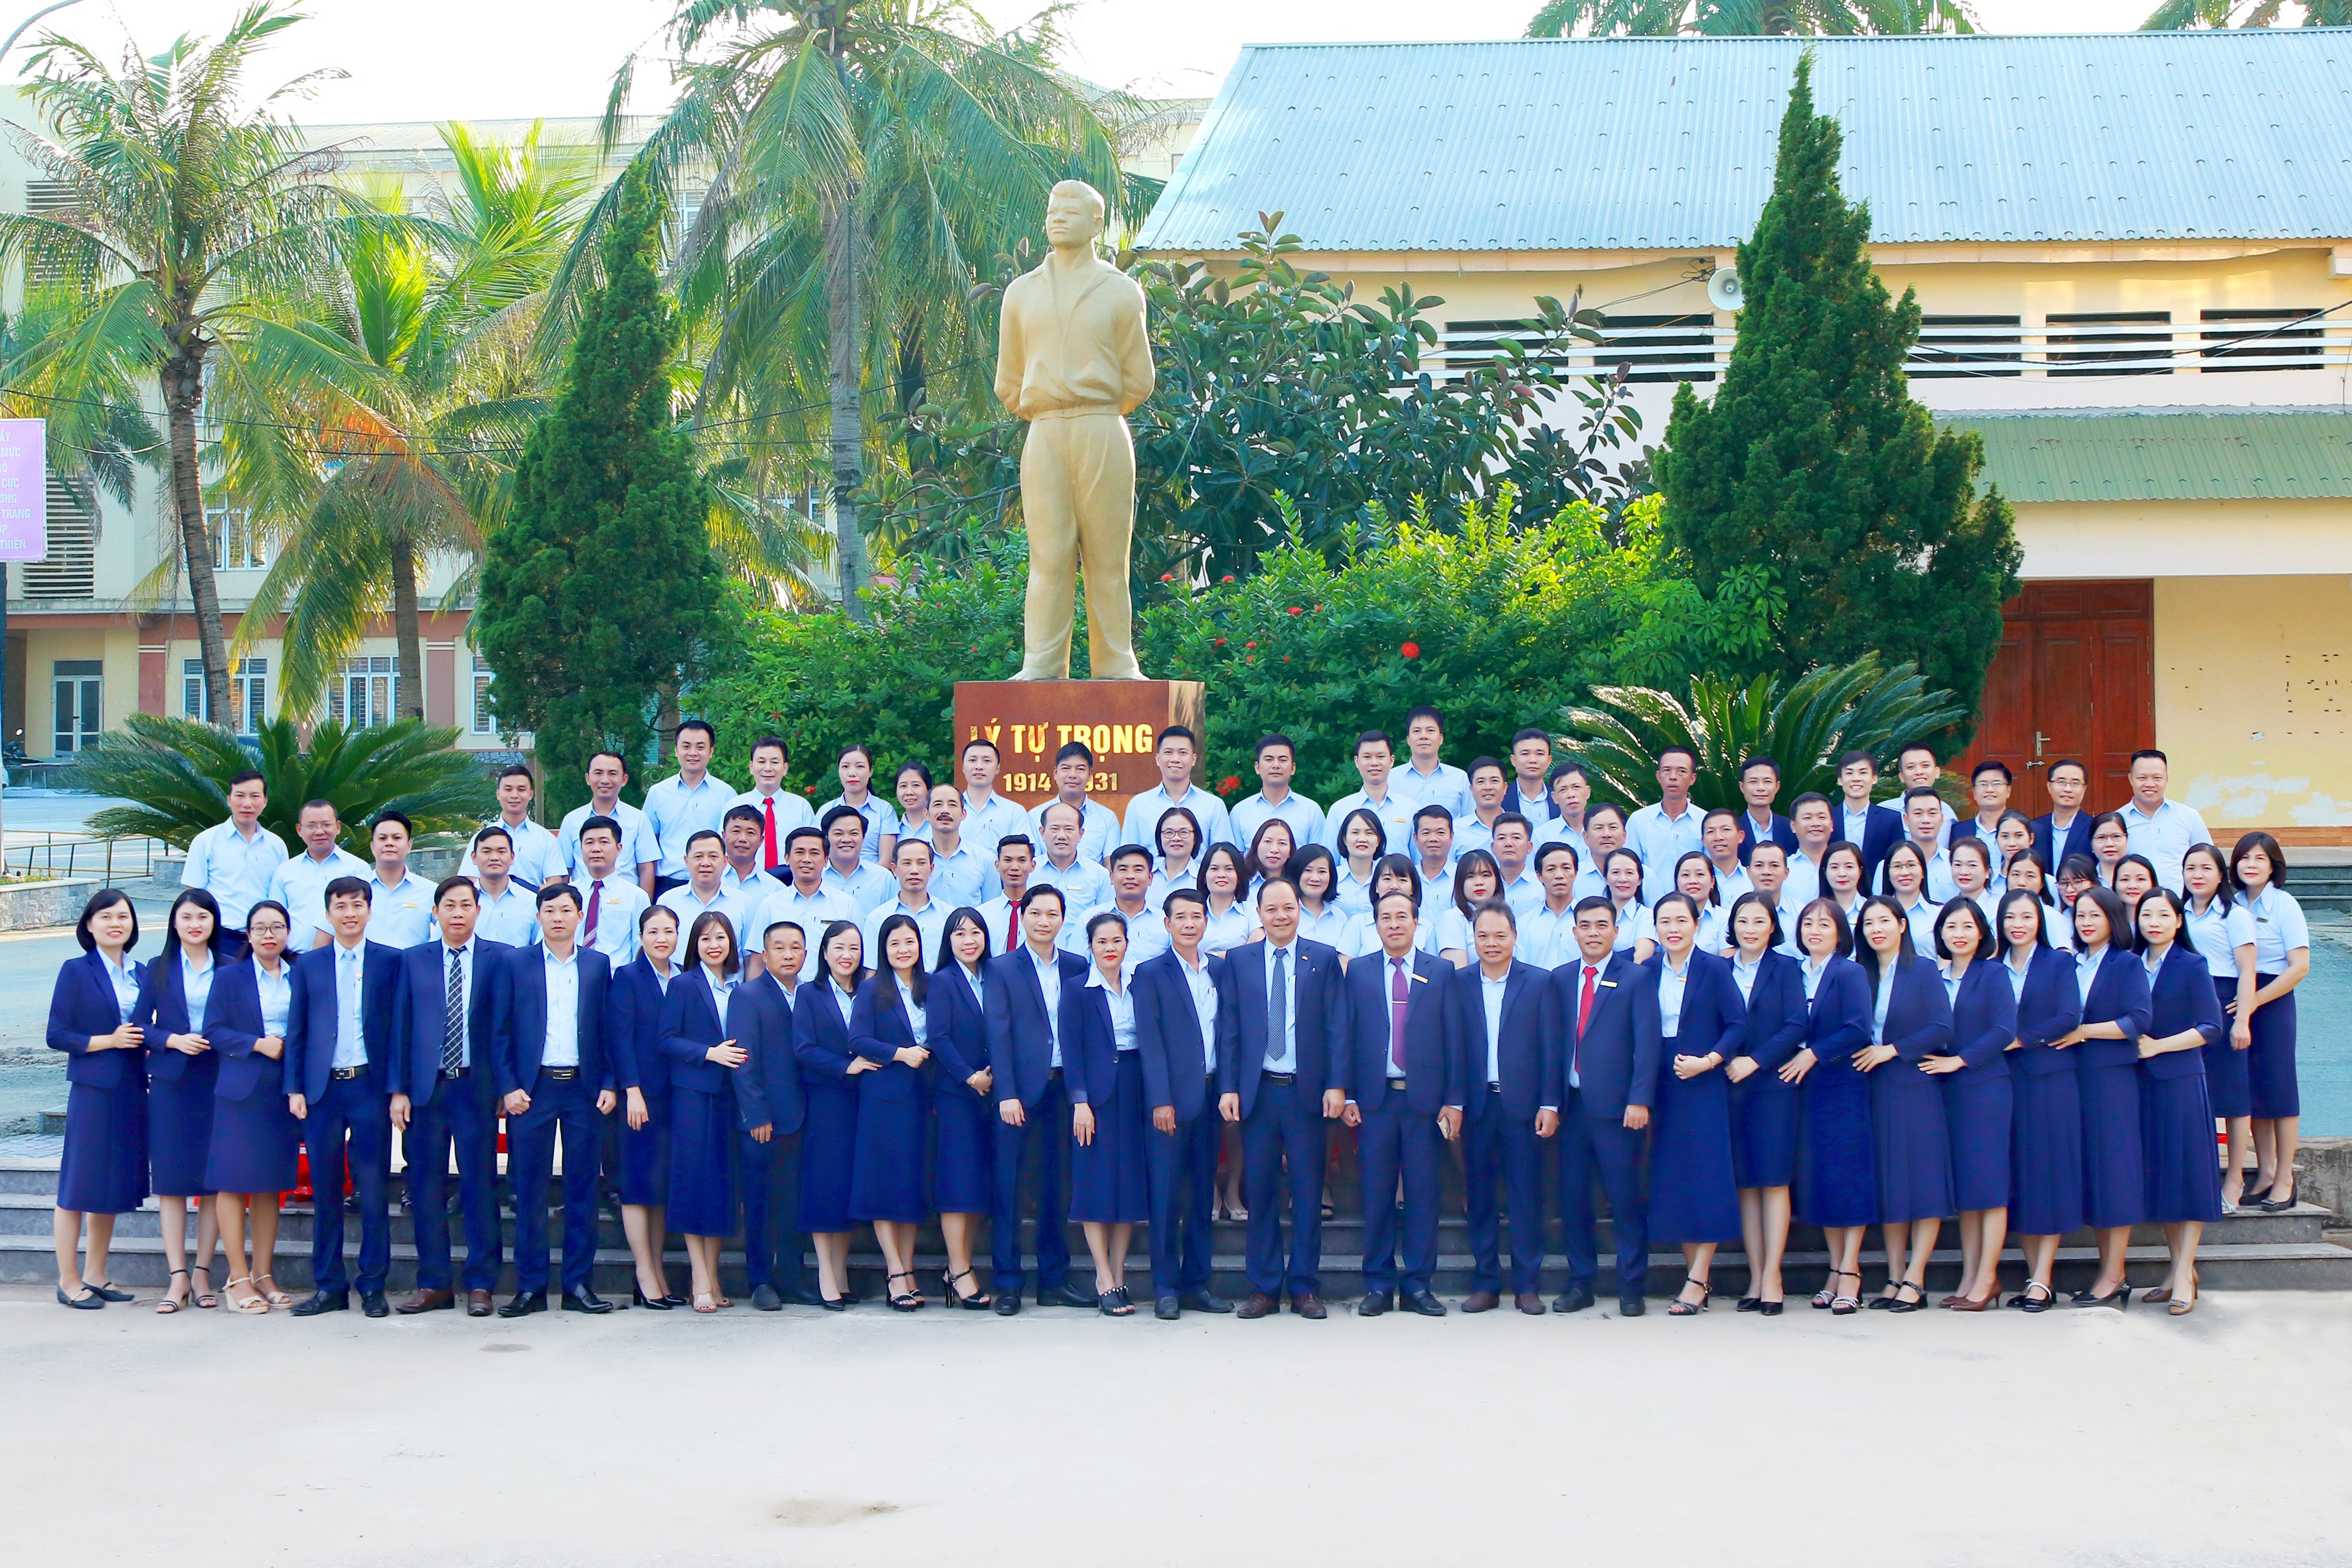 Trường Cao đẳng Việt - Đức Nghệ An long trọng  tổ chức Lễ kỷ niệm 50 năm thành lập và 40 năm ngày Nhà giáo Việt Nam 20/11